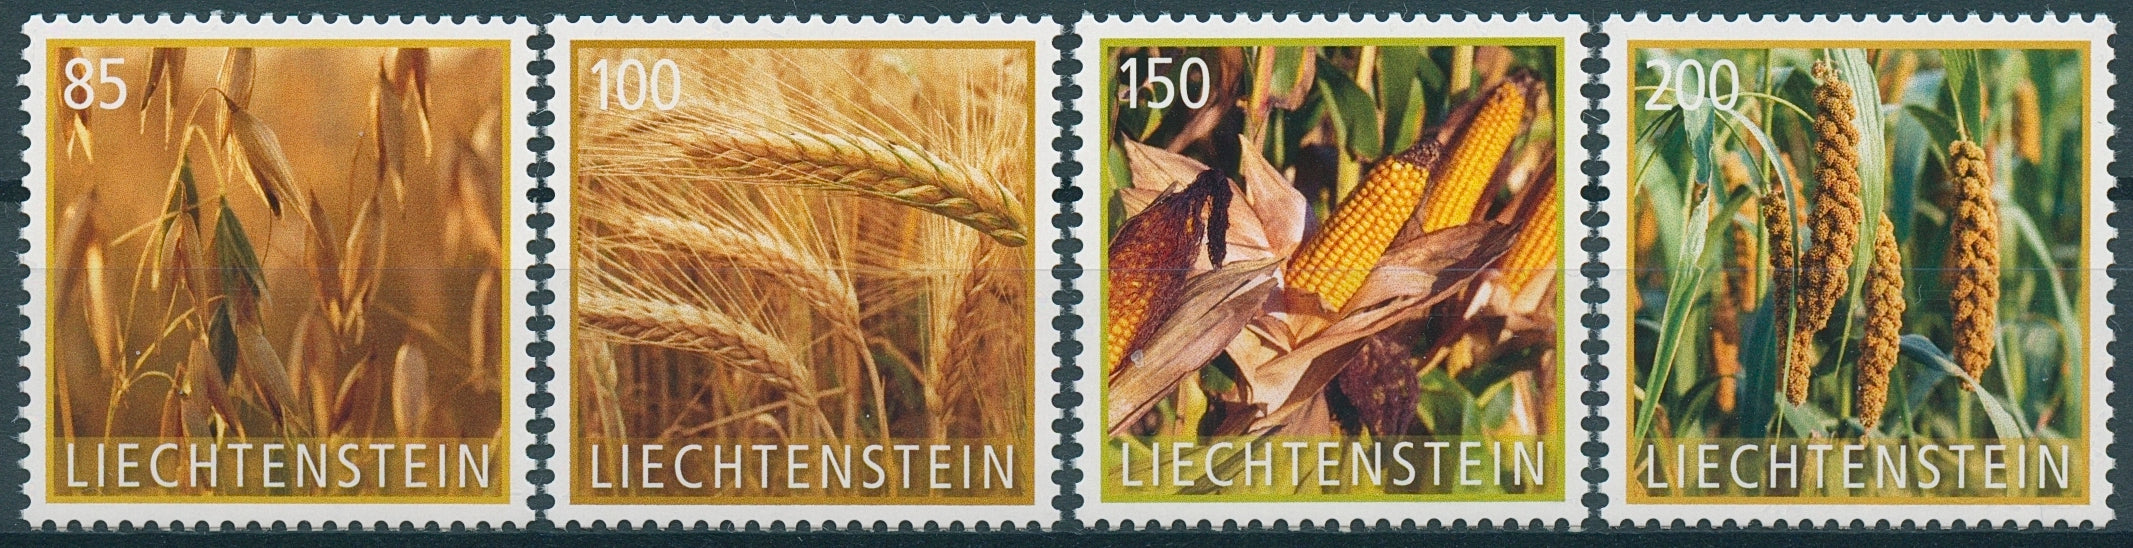 Liechtenstein 2017 MNH Crop Plants Grain Wheat Maize Corn 4v Set Stamps